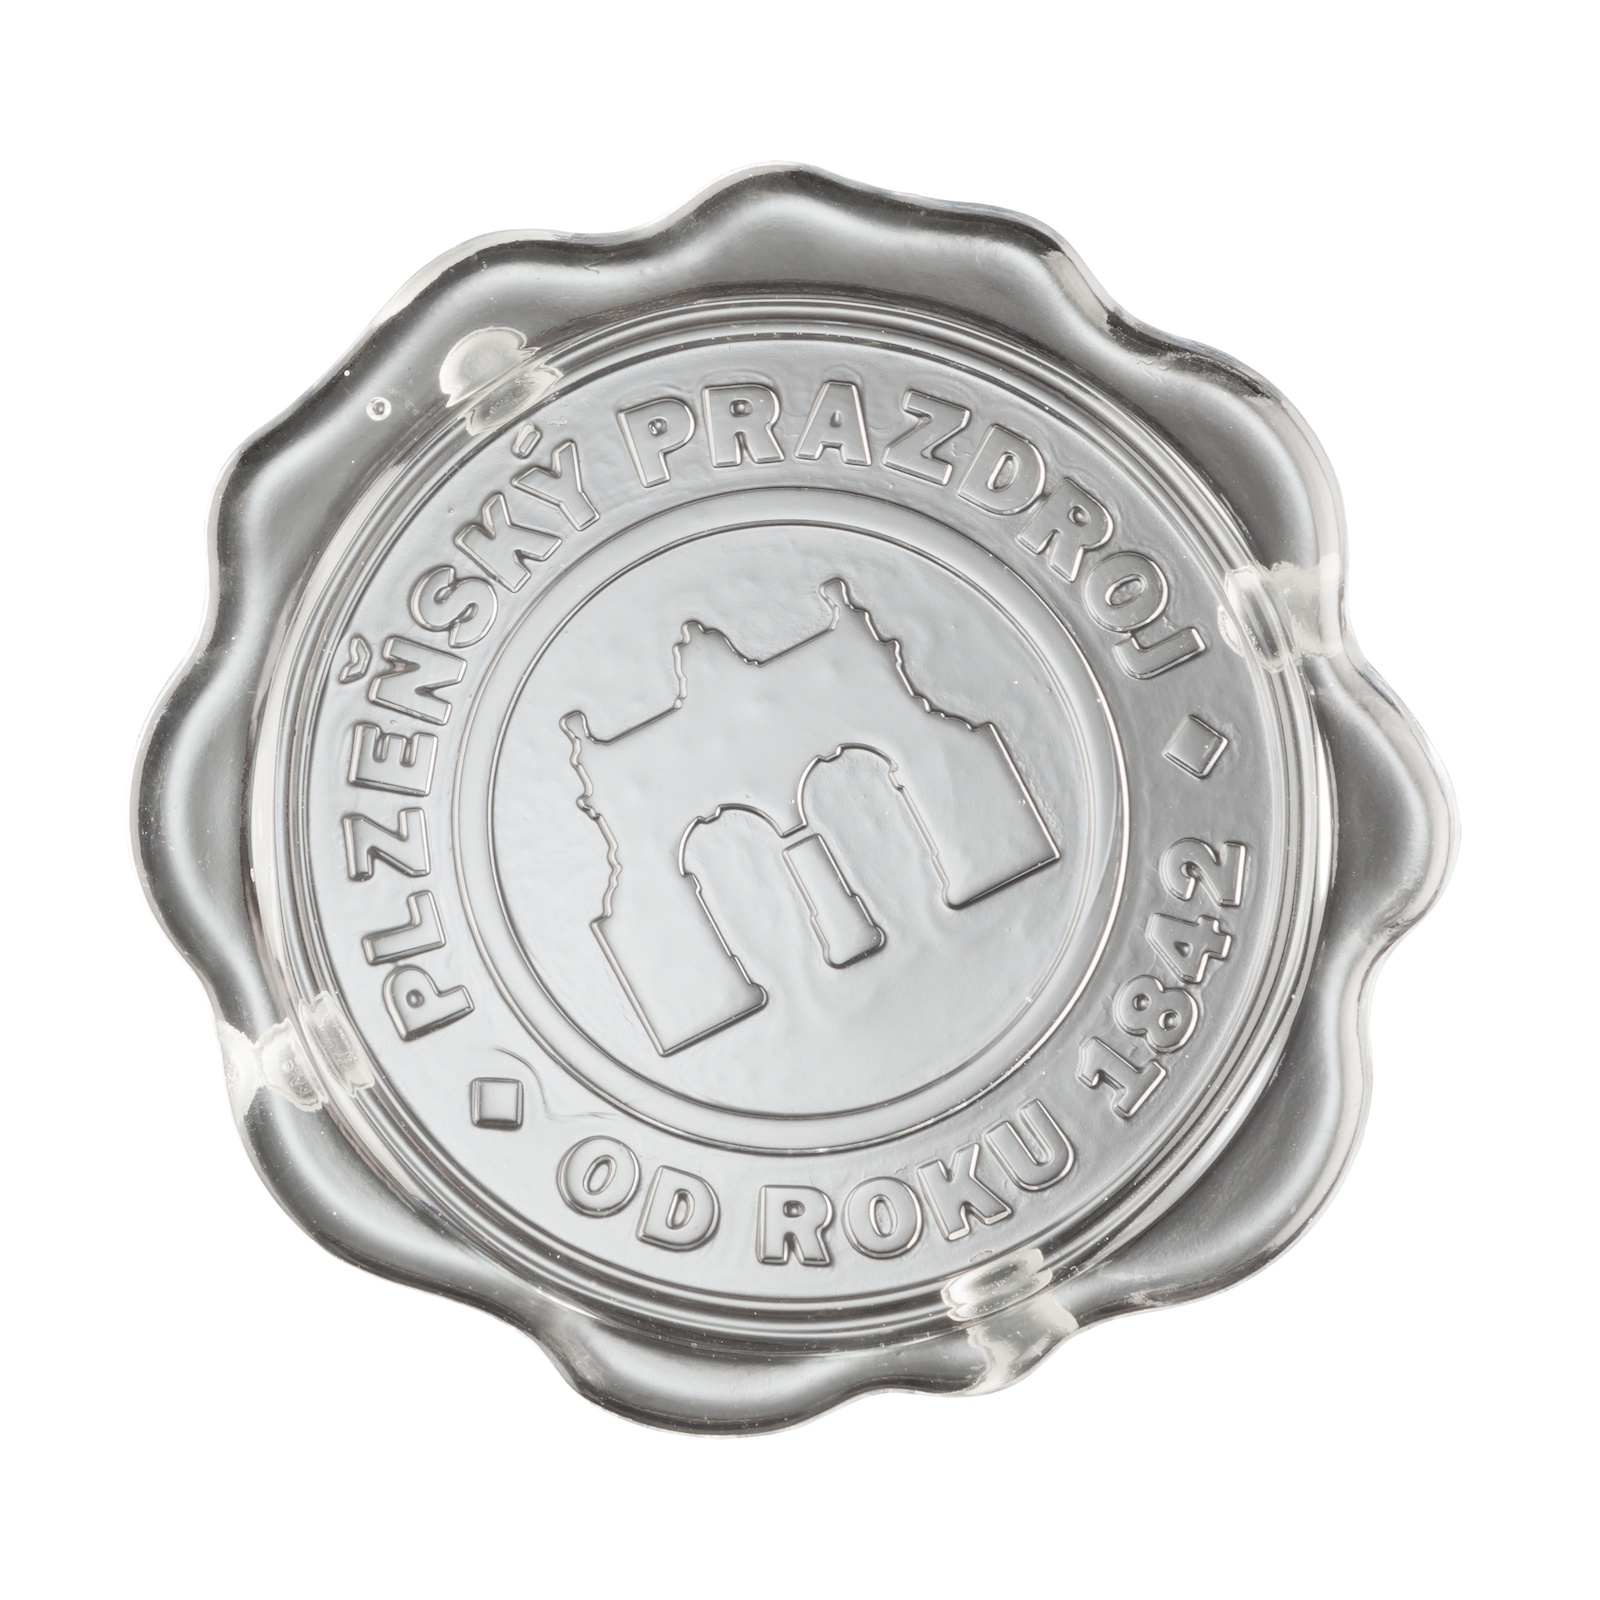 Glas-Bierdeckel mit dem Pilsner Urquell-Logo